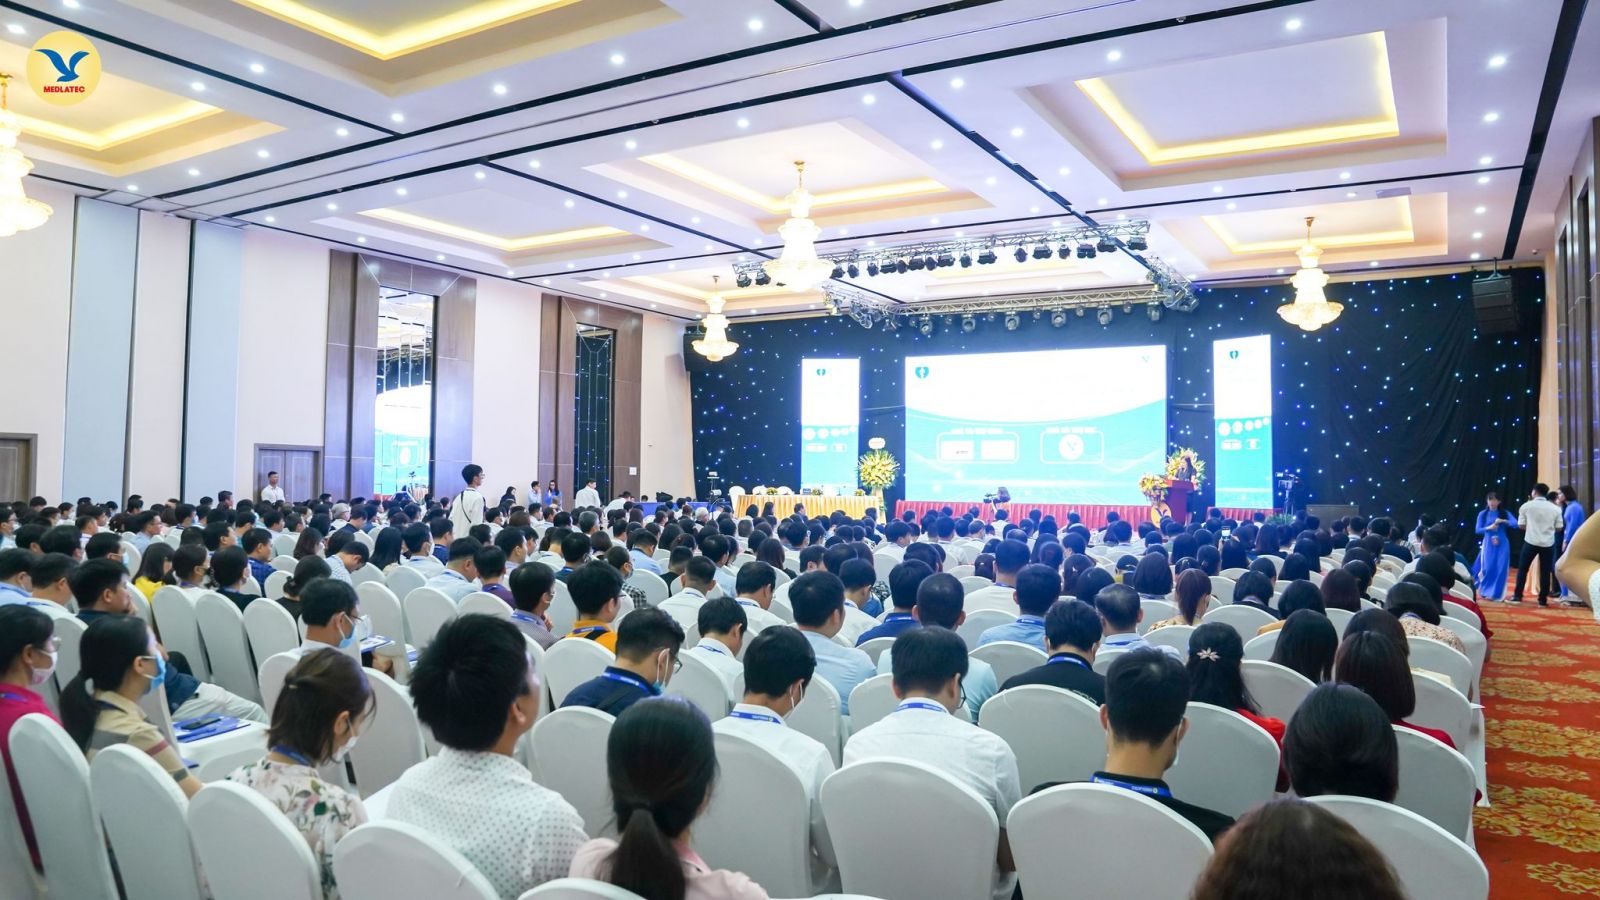 Hội nghị có sự tham gia của 700 bác sĩ đến từ 5 tỉnh Hà Nam, Thái Bình, Nam Đinh, Ninh Bình, Thanh Hóa và hàng trăm bác sĩ theo dõi online